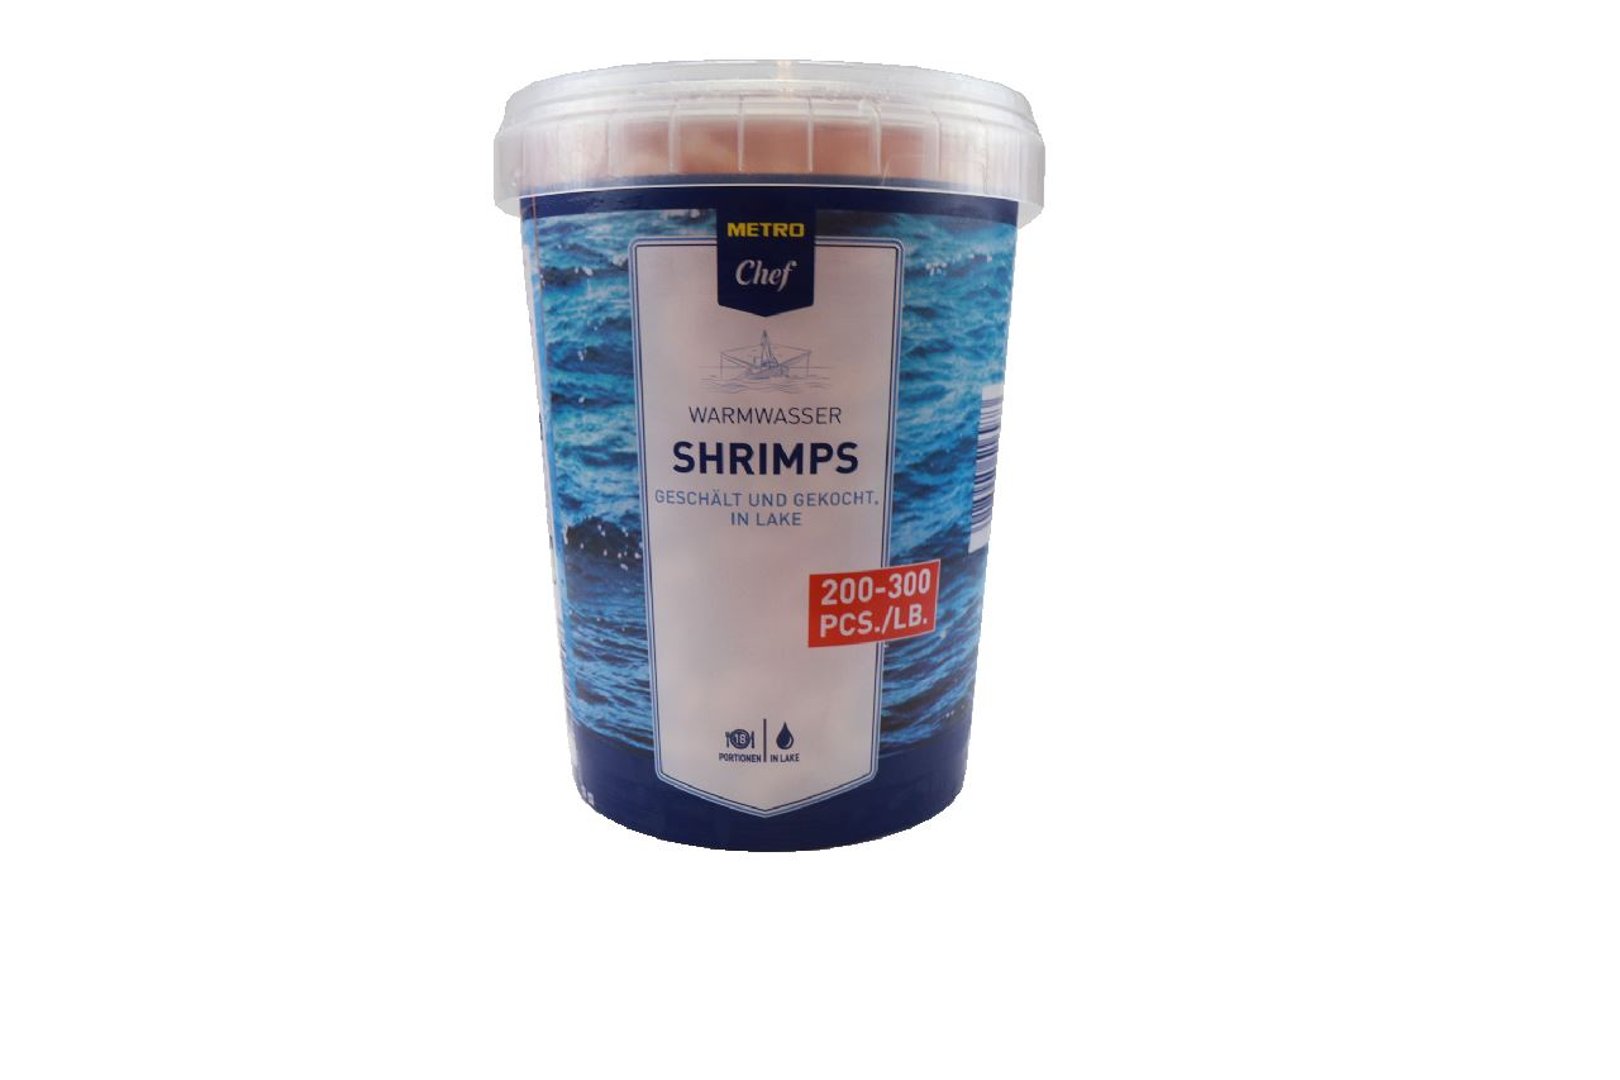 METRO Chef - Warmwasser Shrimps 200/300 - 900 g Tiegel